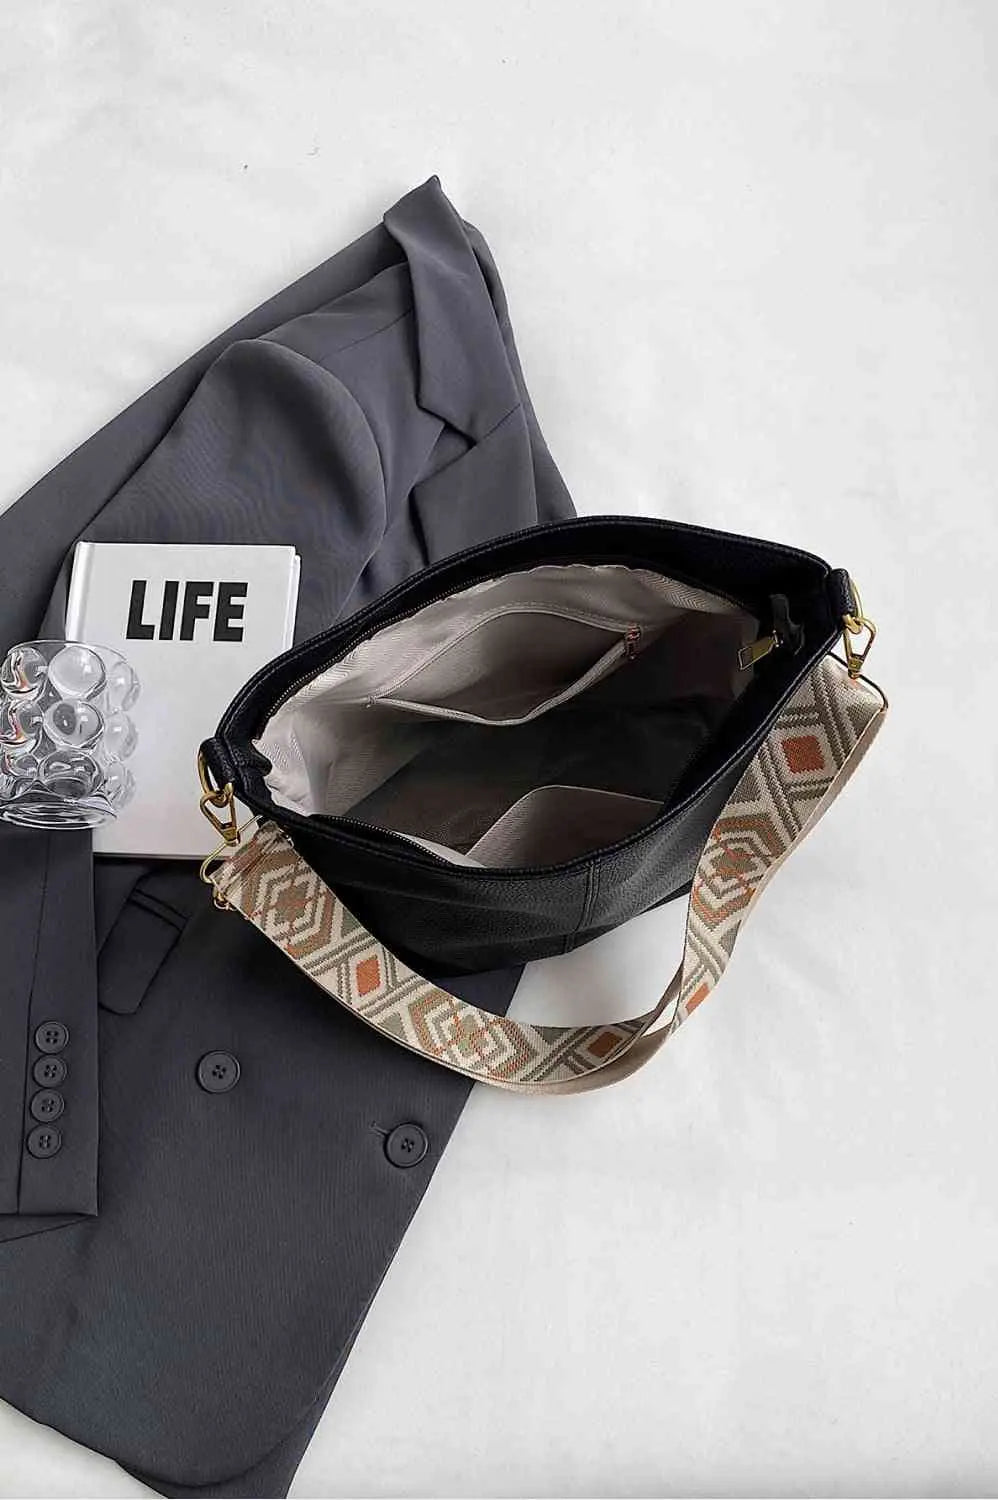 Meg Shoulder Bag |   |  Casual Chic Boutique